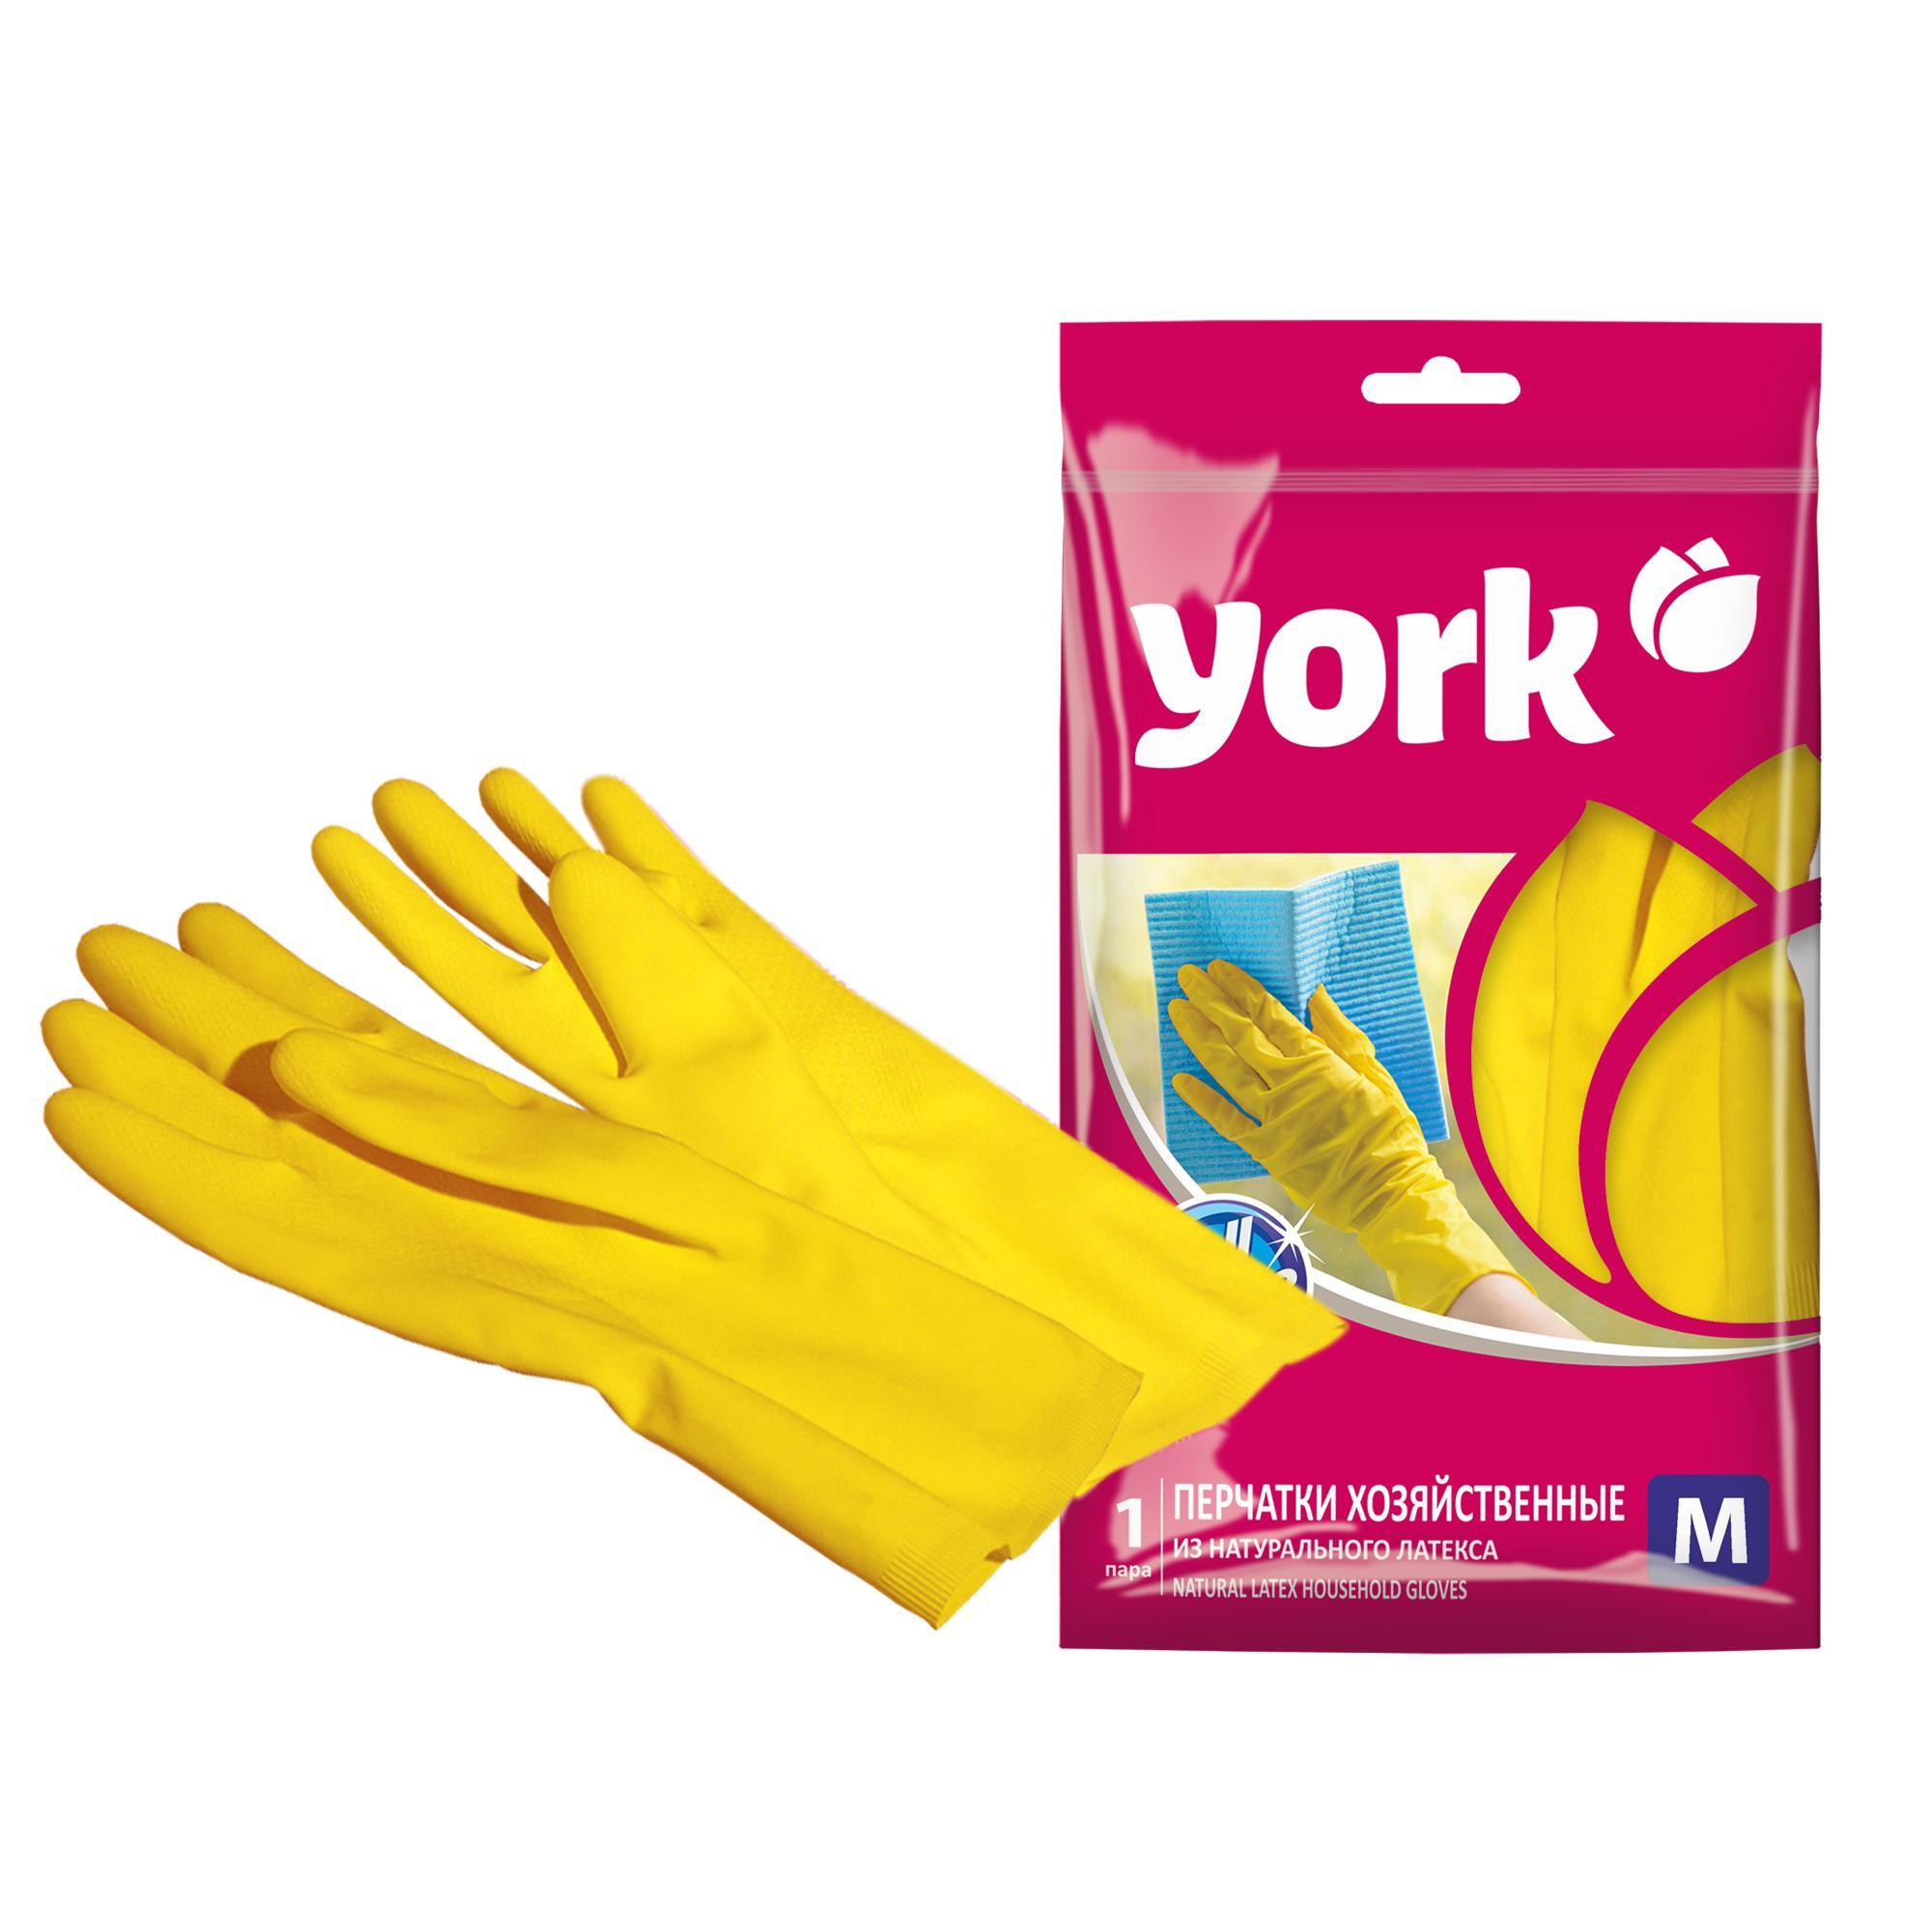 Перчатки хозяйственные York резиновые размер M, пакет